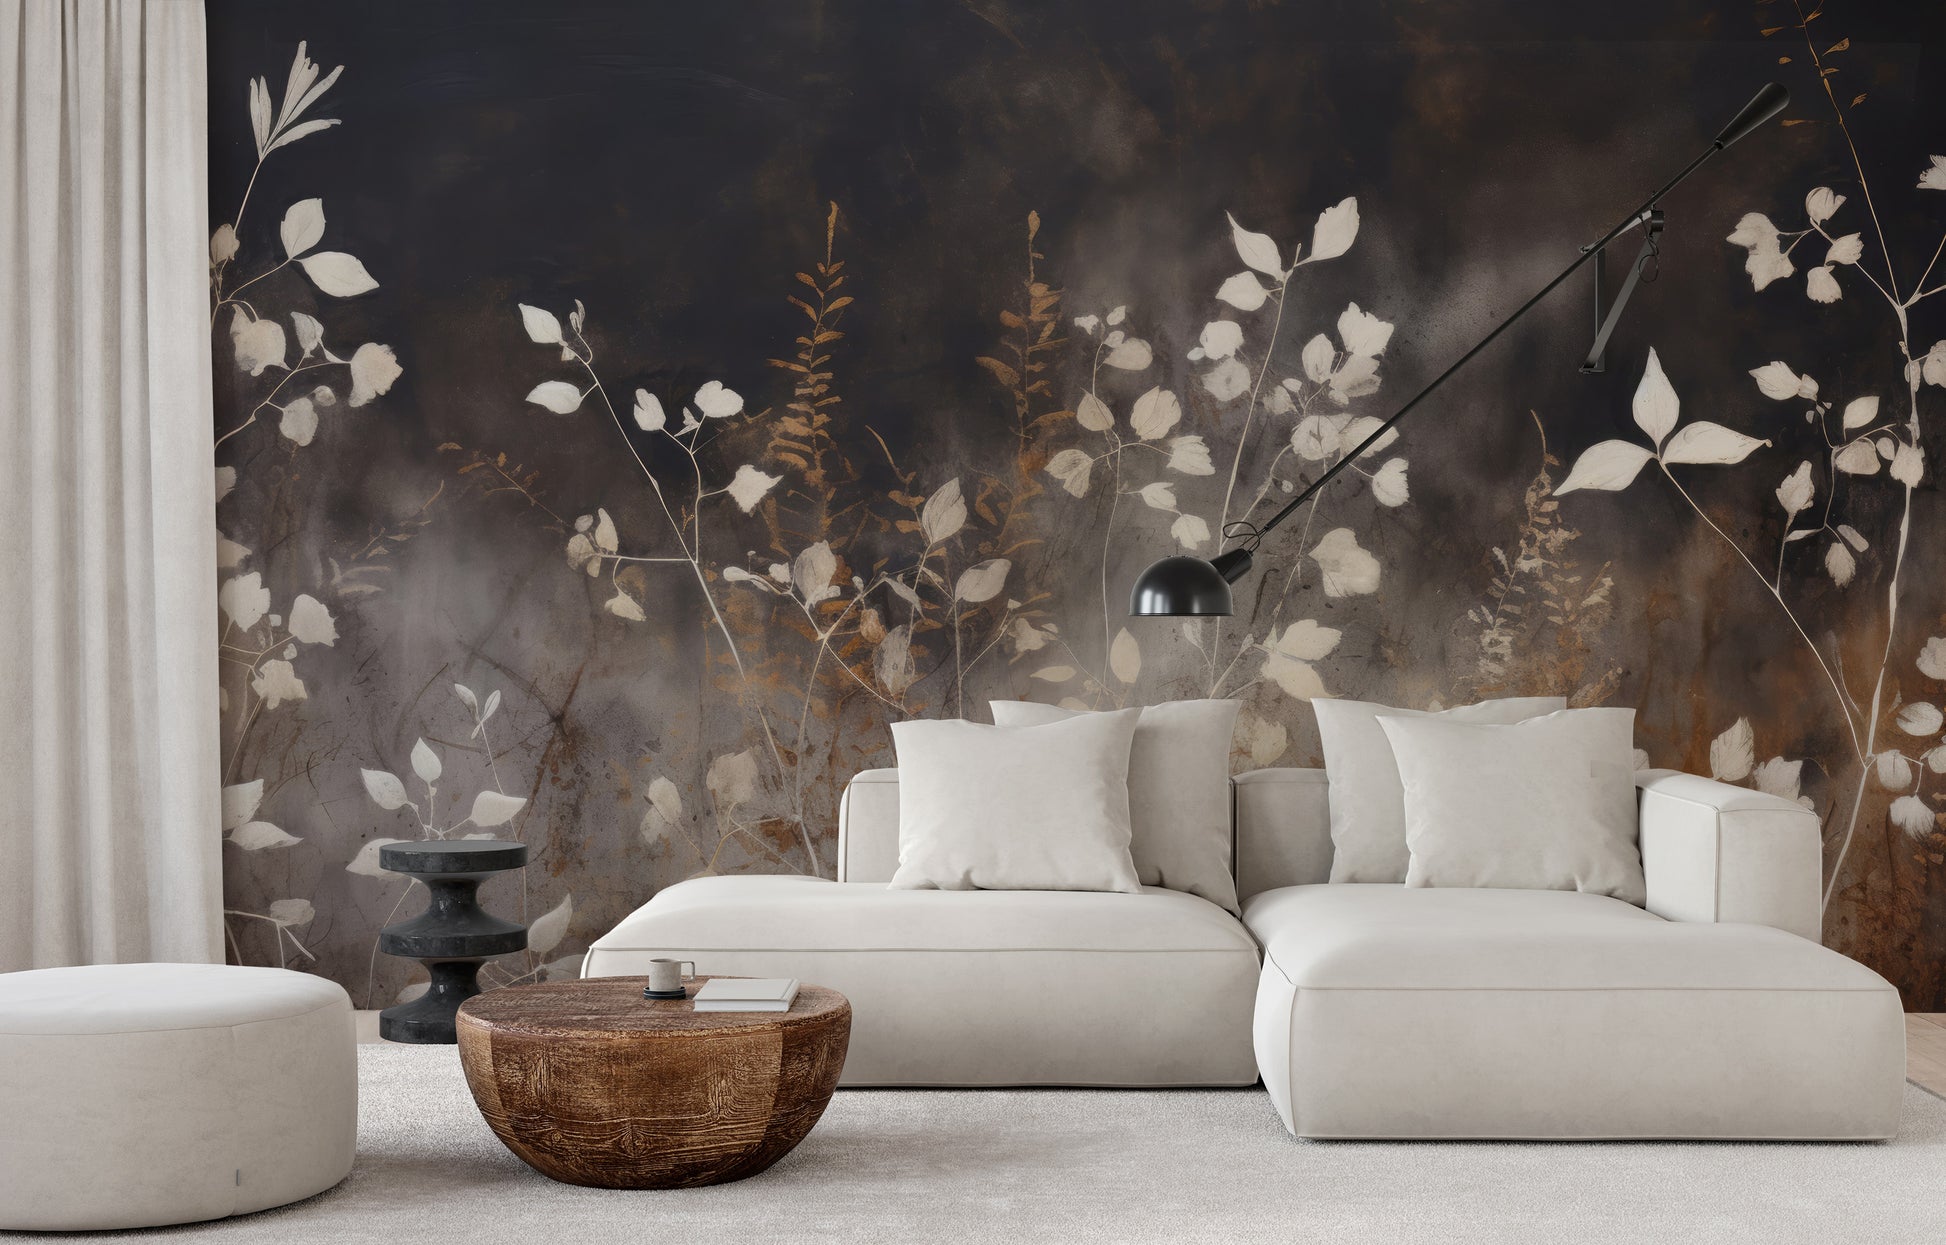 Wzór fototapety artystycznej o nazwie Smokey Flora Elegance pokazanej w aranżacji wnętrza.